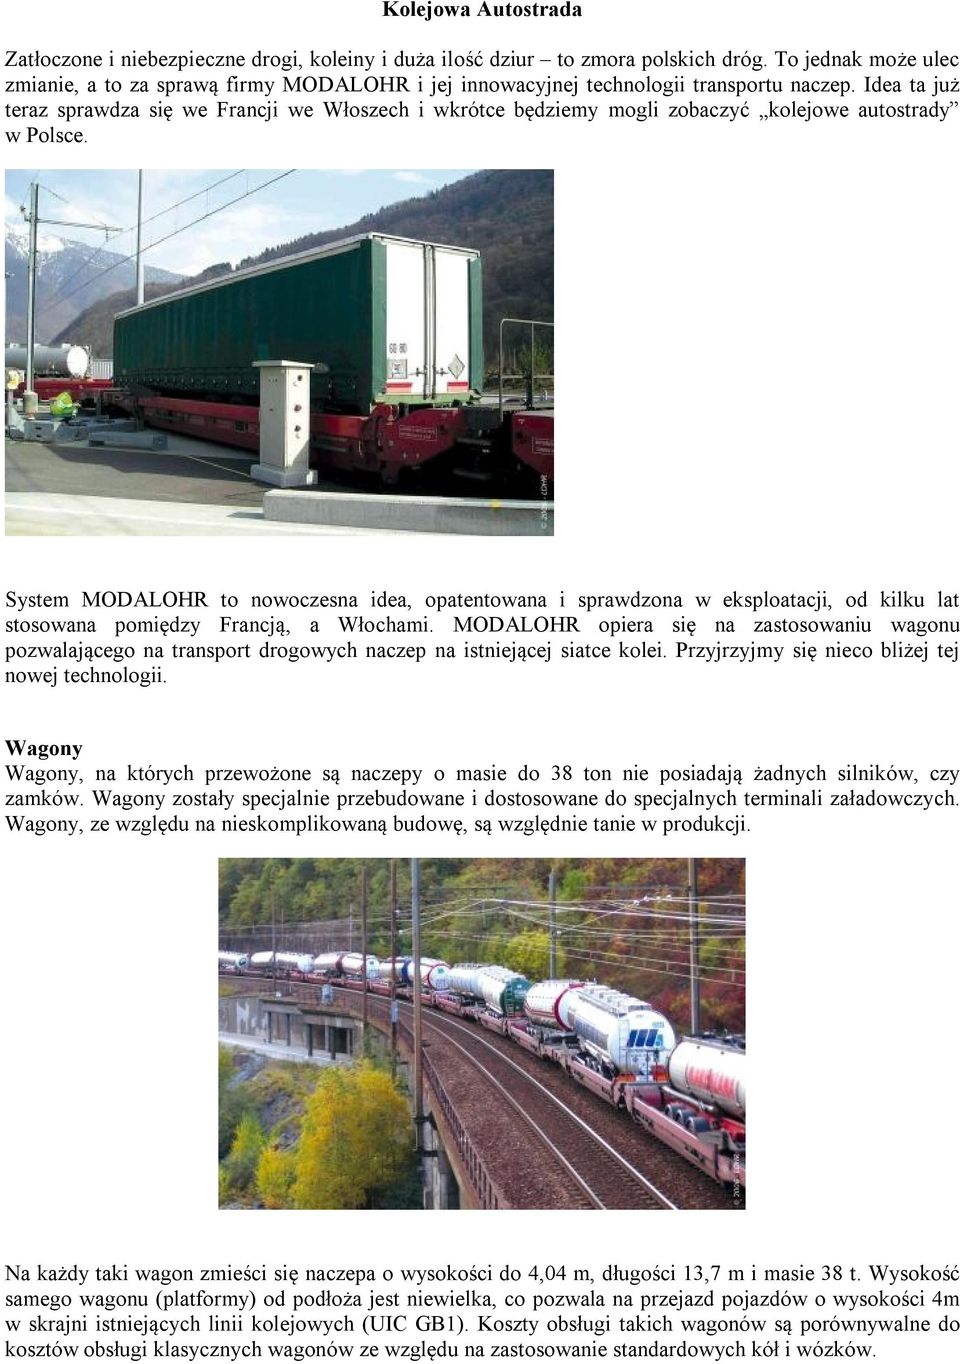 Idea ta już teraz sprawdza się we Francji we Włoszech i wkrótce będziemy mogli zobaczyć kolejowe autostrady w Polsce.